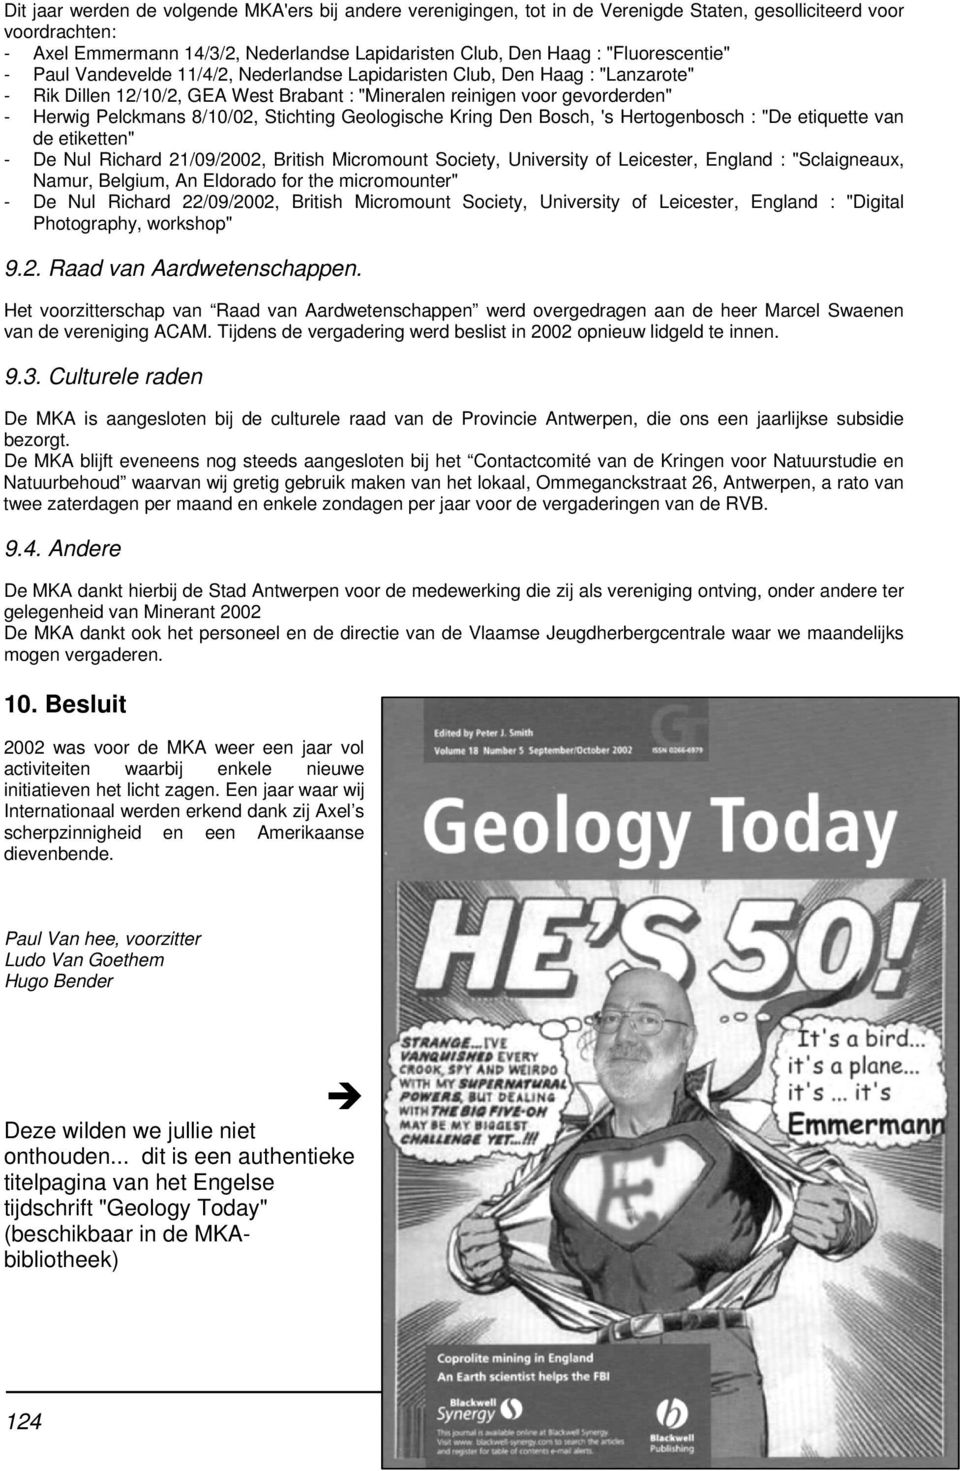 8/10/02, Stichting Geologische Kring Den Bosch, 's Hertogenbosch : "De etiquette van de etiketten" - De Nul Richard 21/09/2002, British Micromount Society, University of Leicester, England :